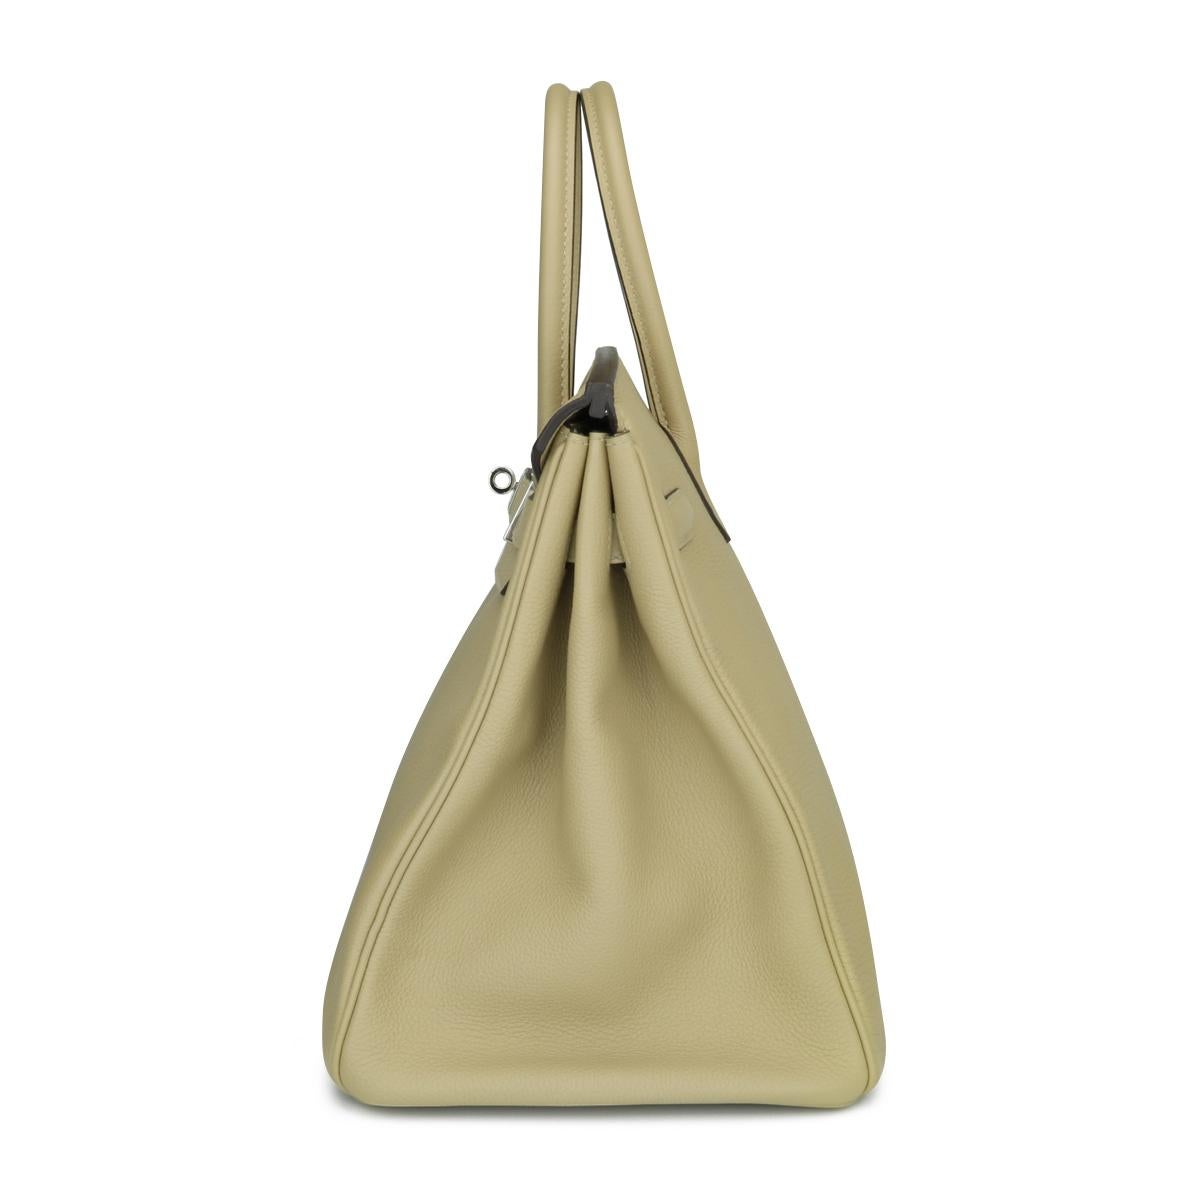 Hermès Birkin Bag 35cm Tasche Trench Togo Leder mit Palladium Hardware Stempel X für Damen oder Herren